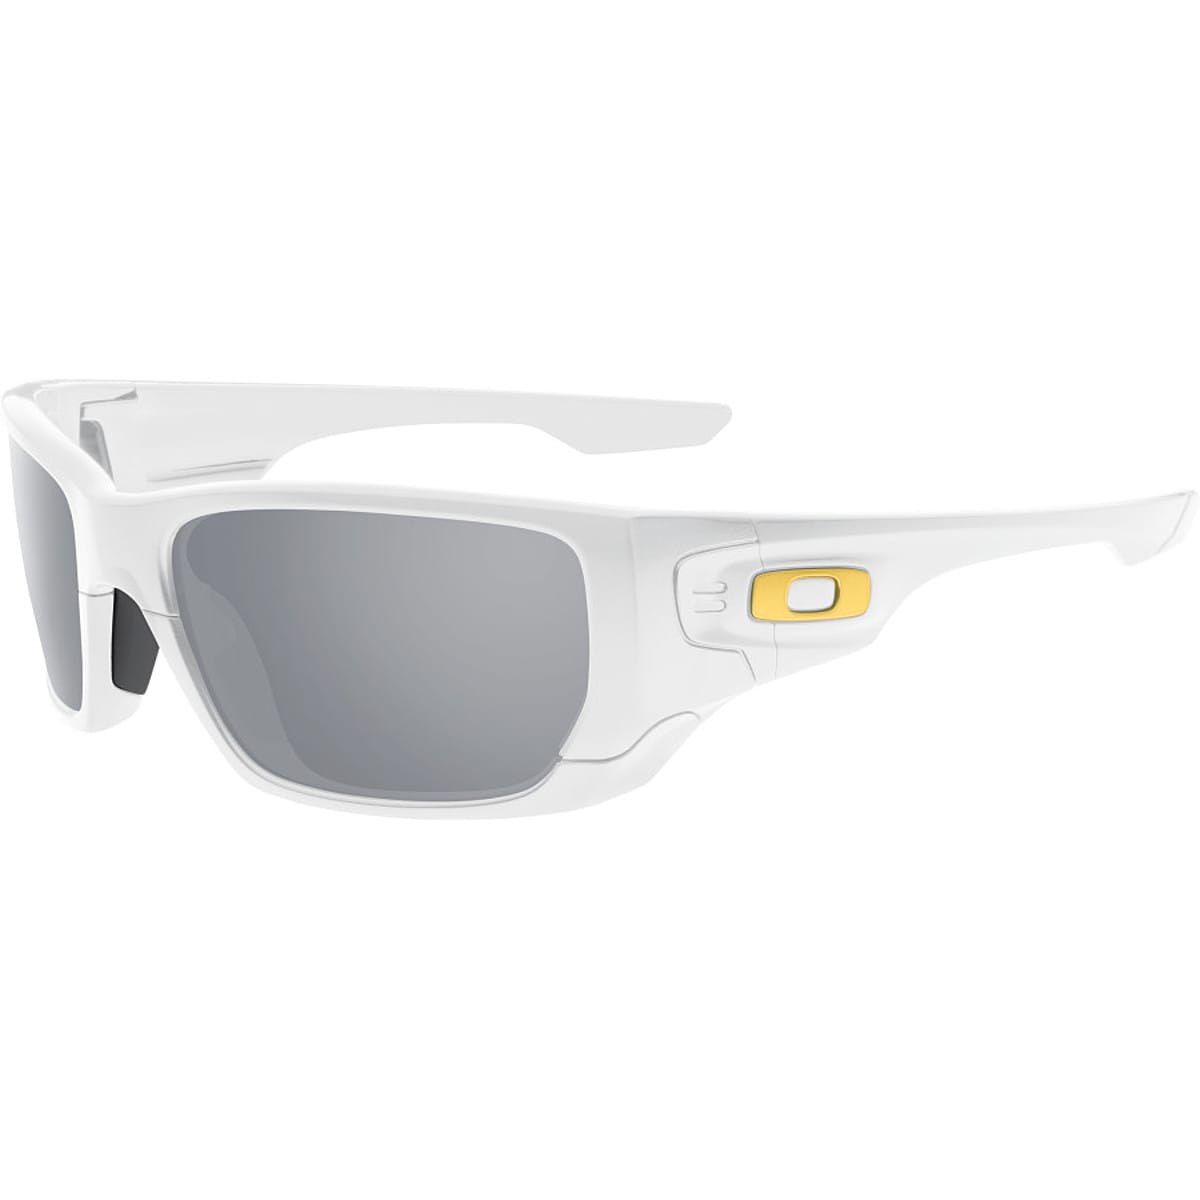 Oakley Shaun White Signature Style Switch Sunglasses Accessories